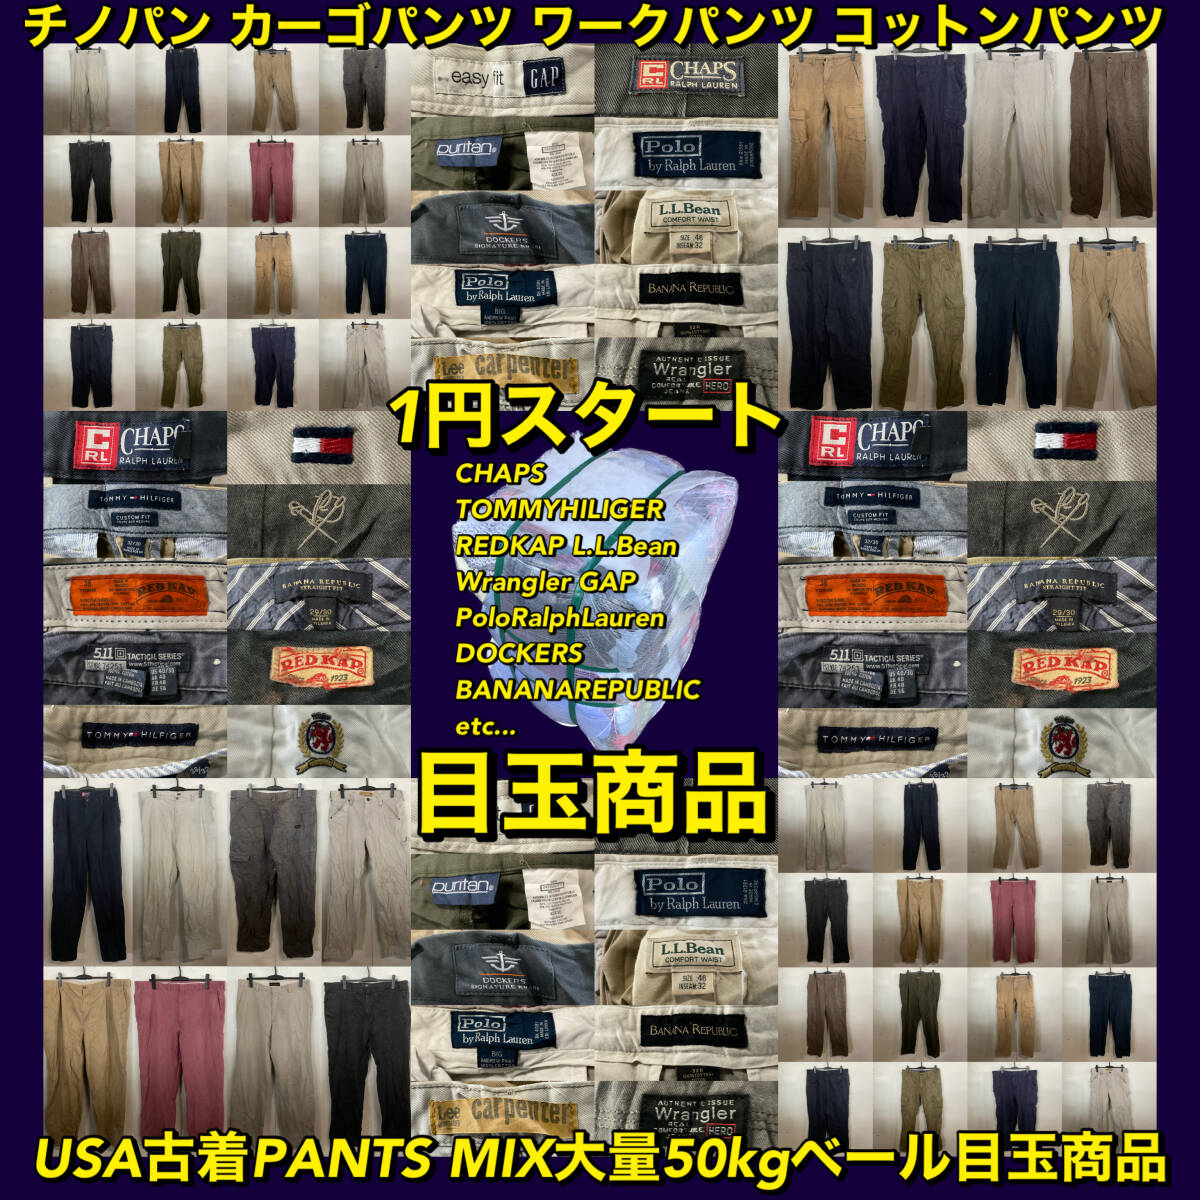 [T654]*1 старт бренд несколько большее количество * America б/у одежда . рекомендация MEN\'S PANTS MIX много 50kg вуаль Medama товар chino cargo запас сильно сниженная цена 